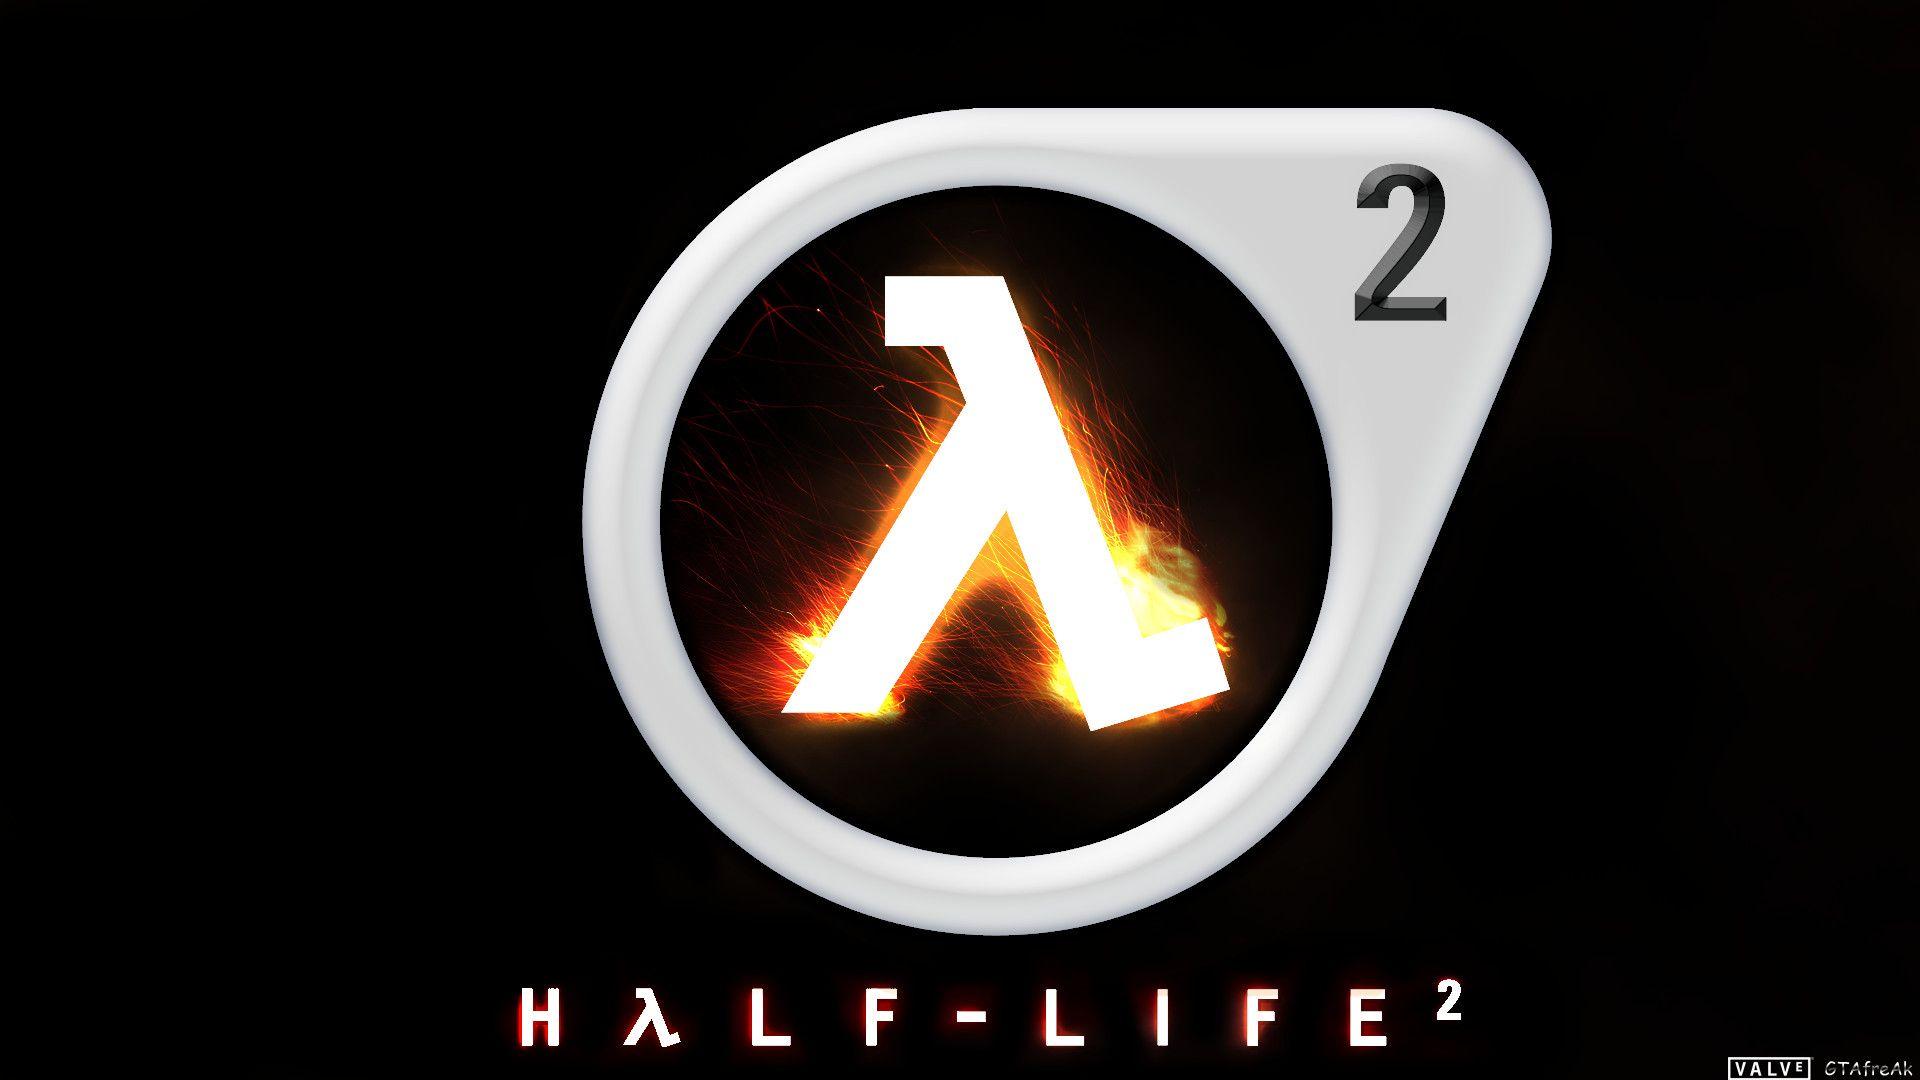 Half Life 2 Wallpapers HD - Wallpaper Cave